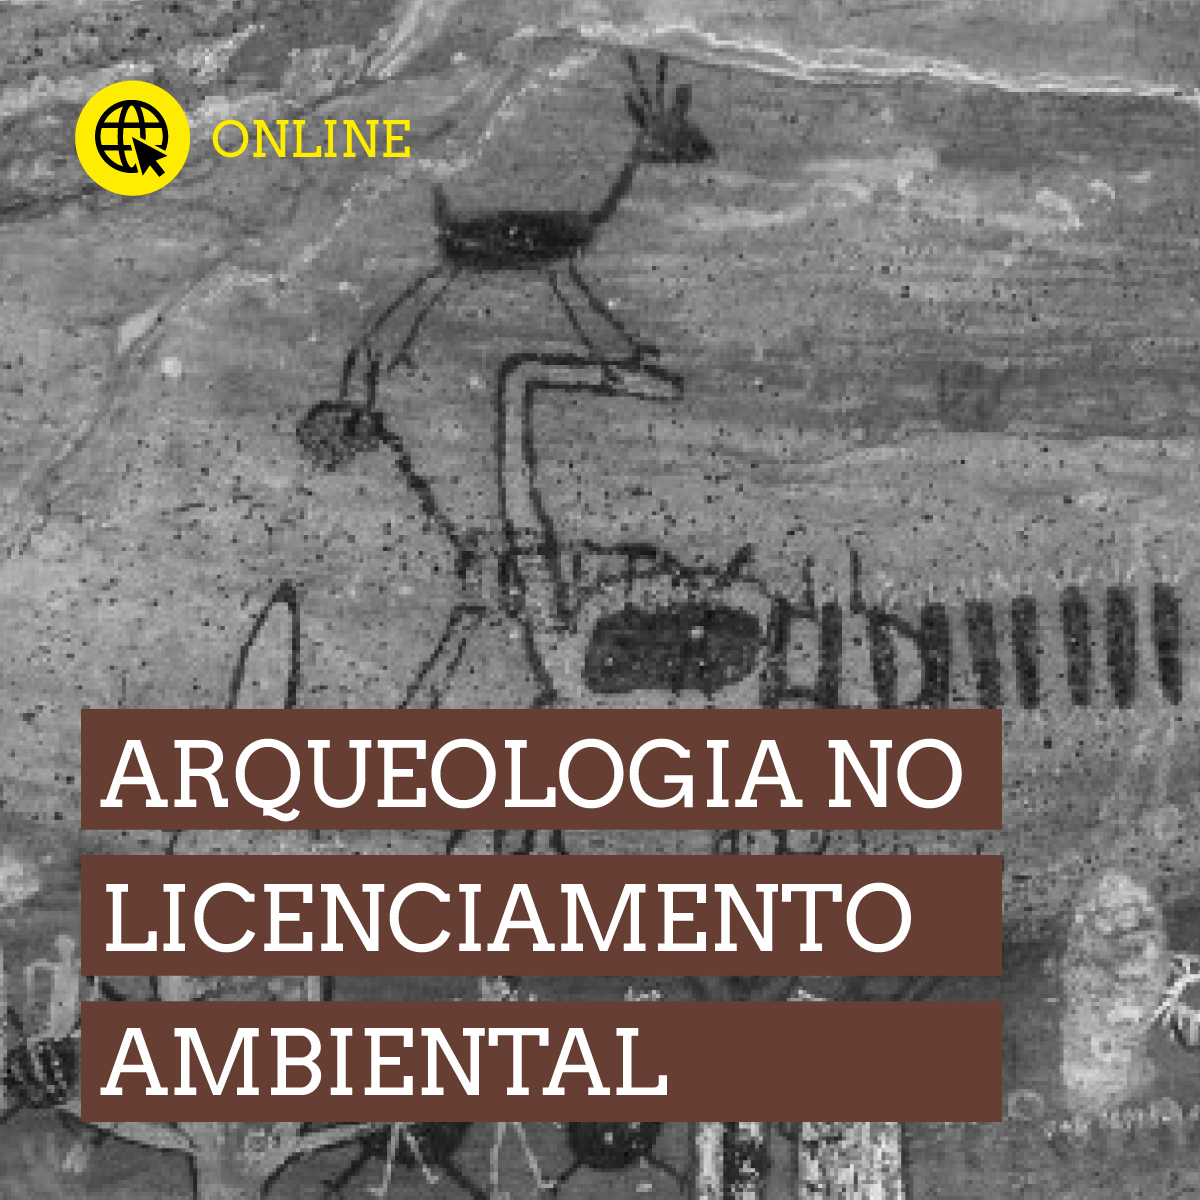 Arqueologia no Licenciamento Ambiental